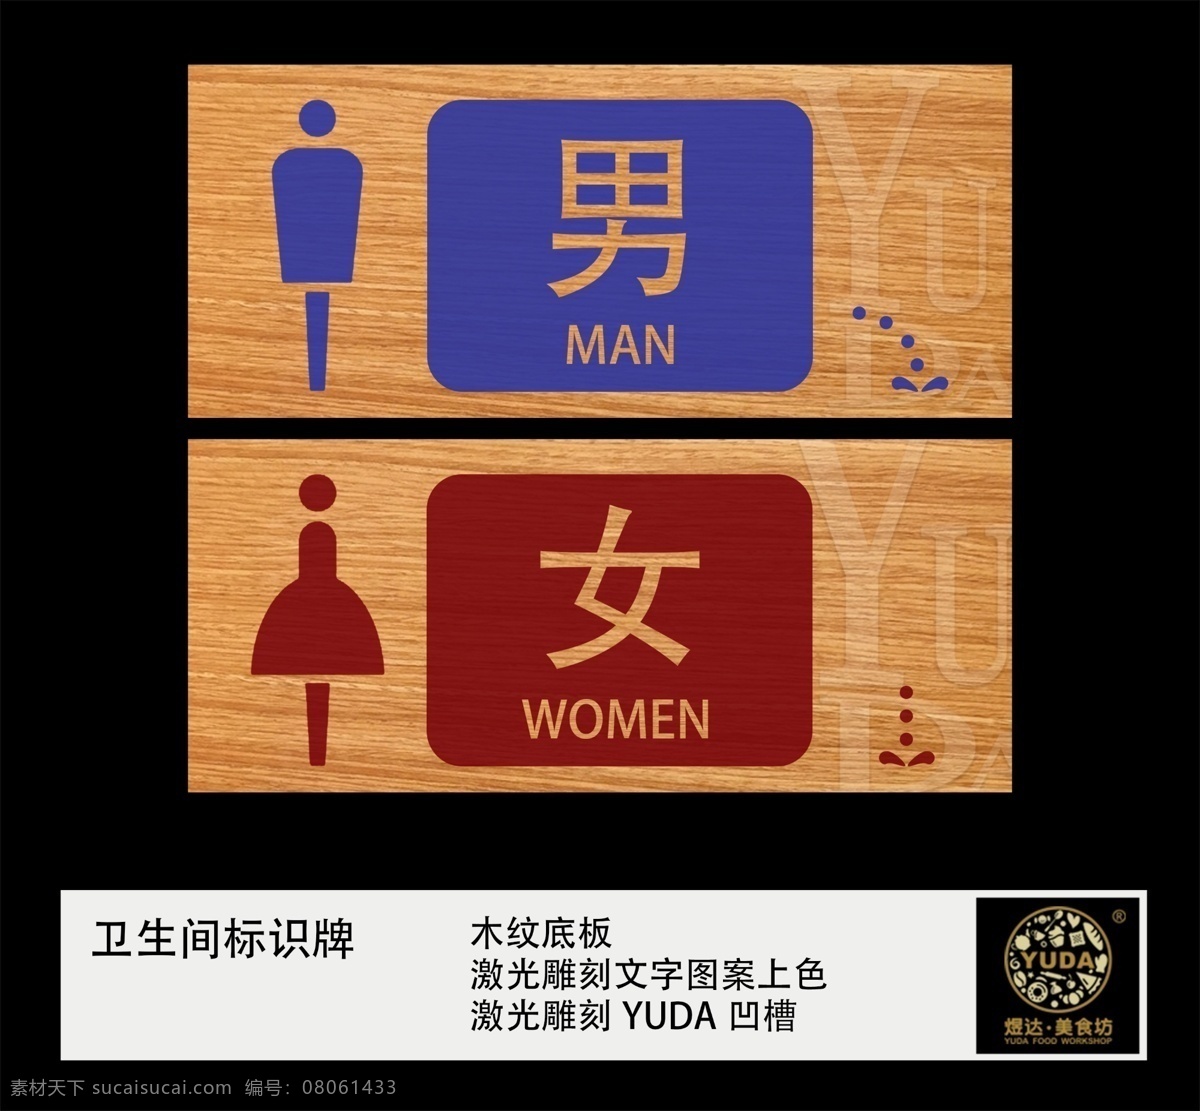 厕所标识牌 木纹 标识 厕所 男女 中国风 室外广告设计